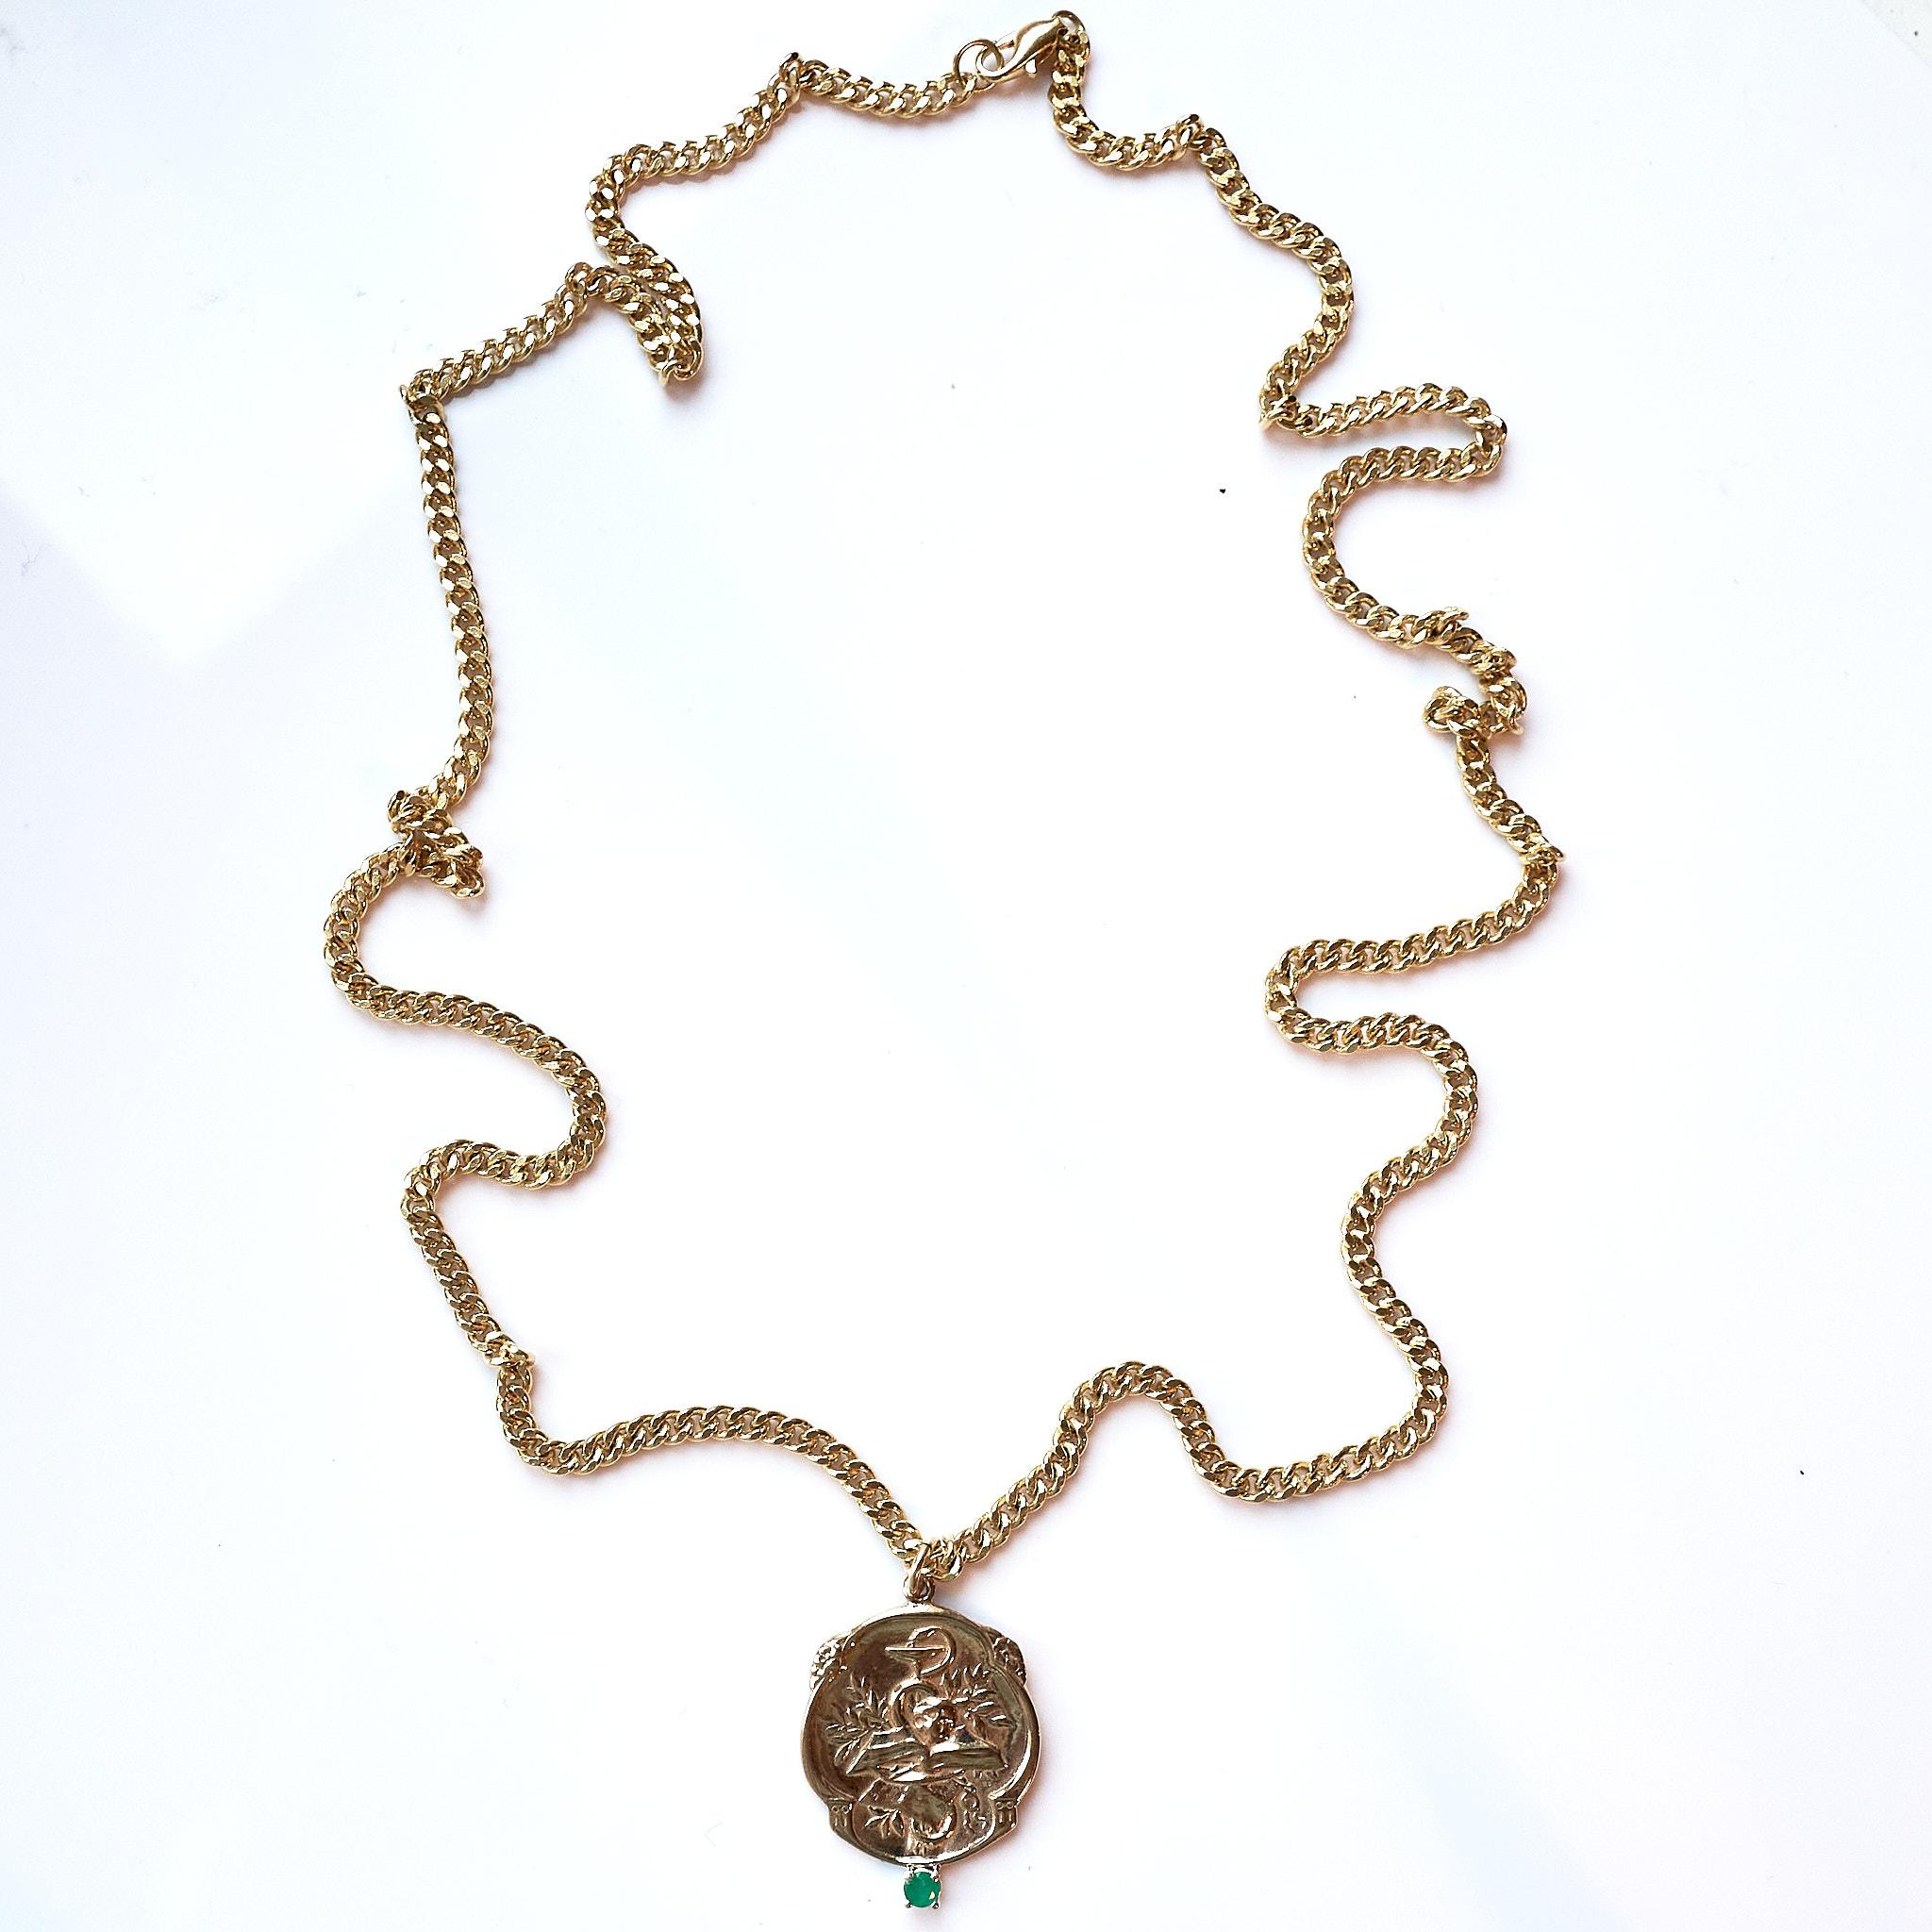 Brilliant Cut Emerald Victorian Style Memento Mori Medal Necklace Skull Chain For Sale